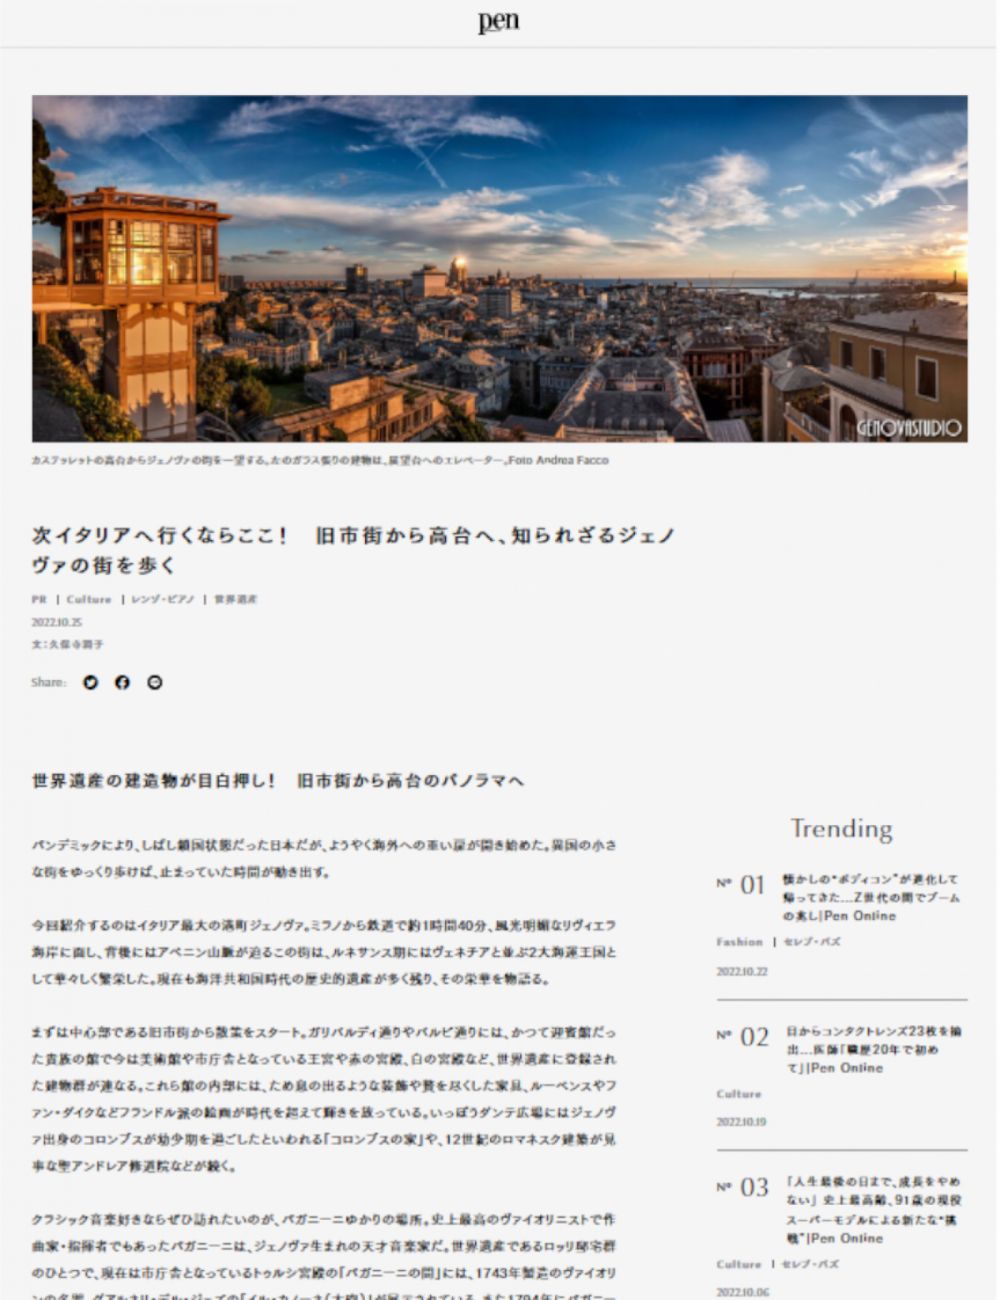 Genova dal centro storico alla città alta - PEN ONLINE - Tokyo